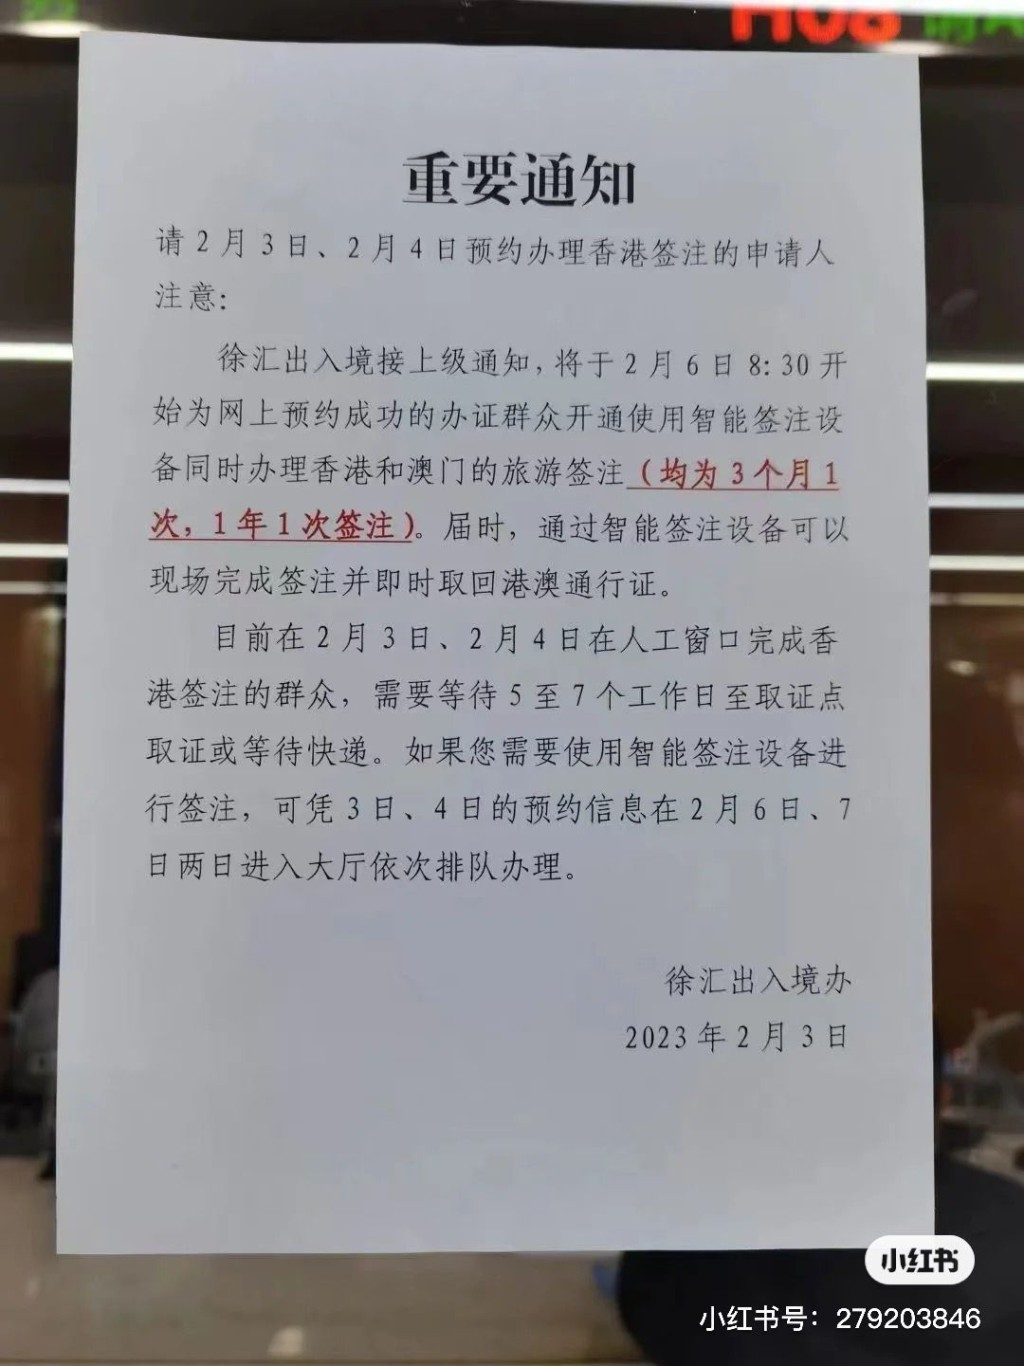 上海徐匯出入境辦發出通知。